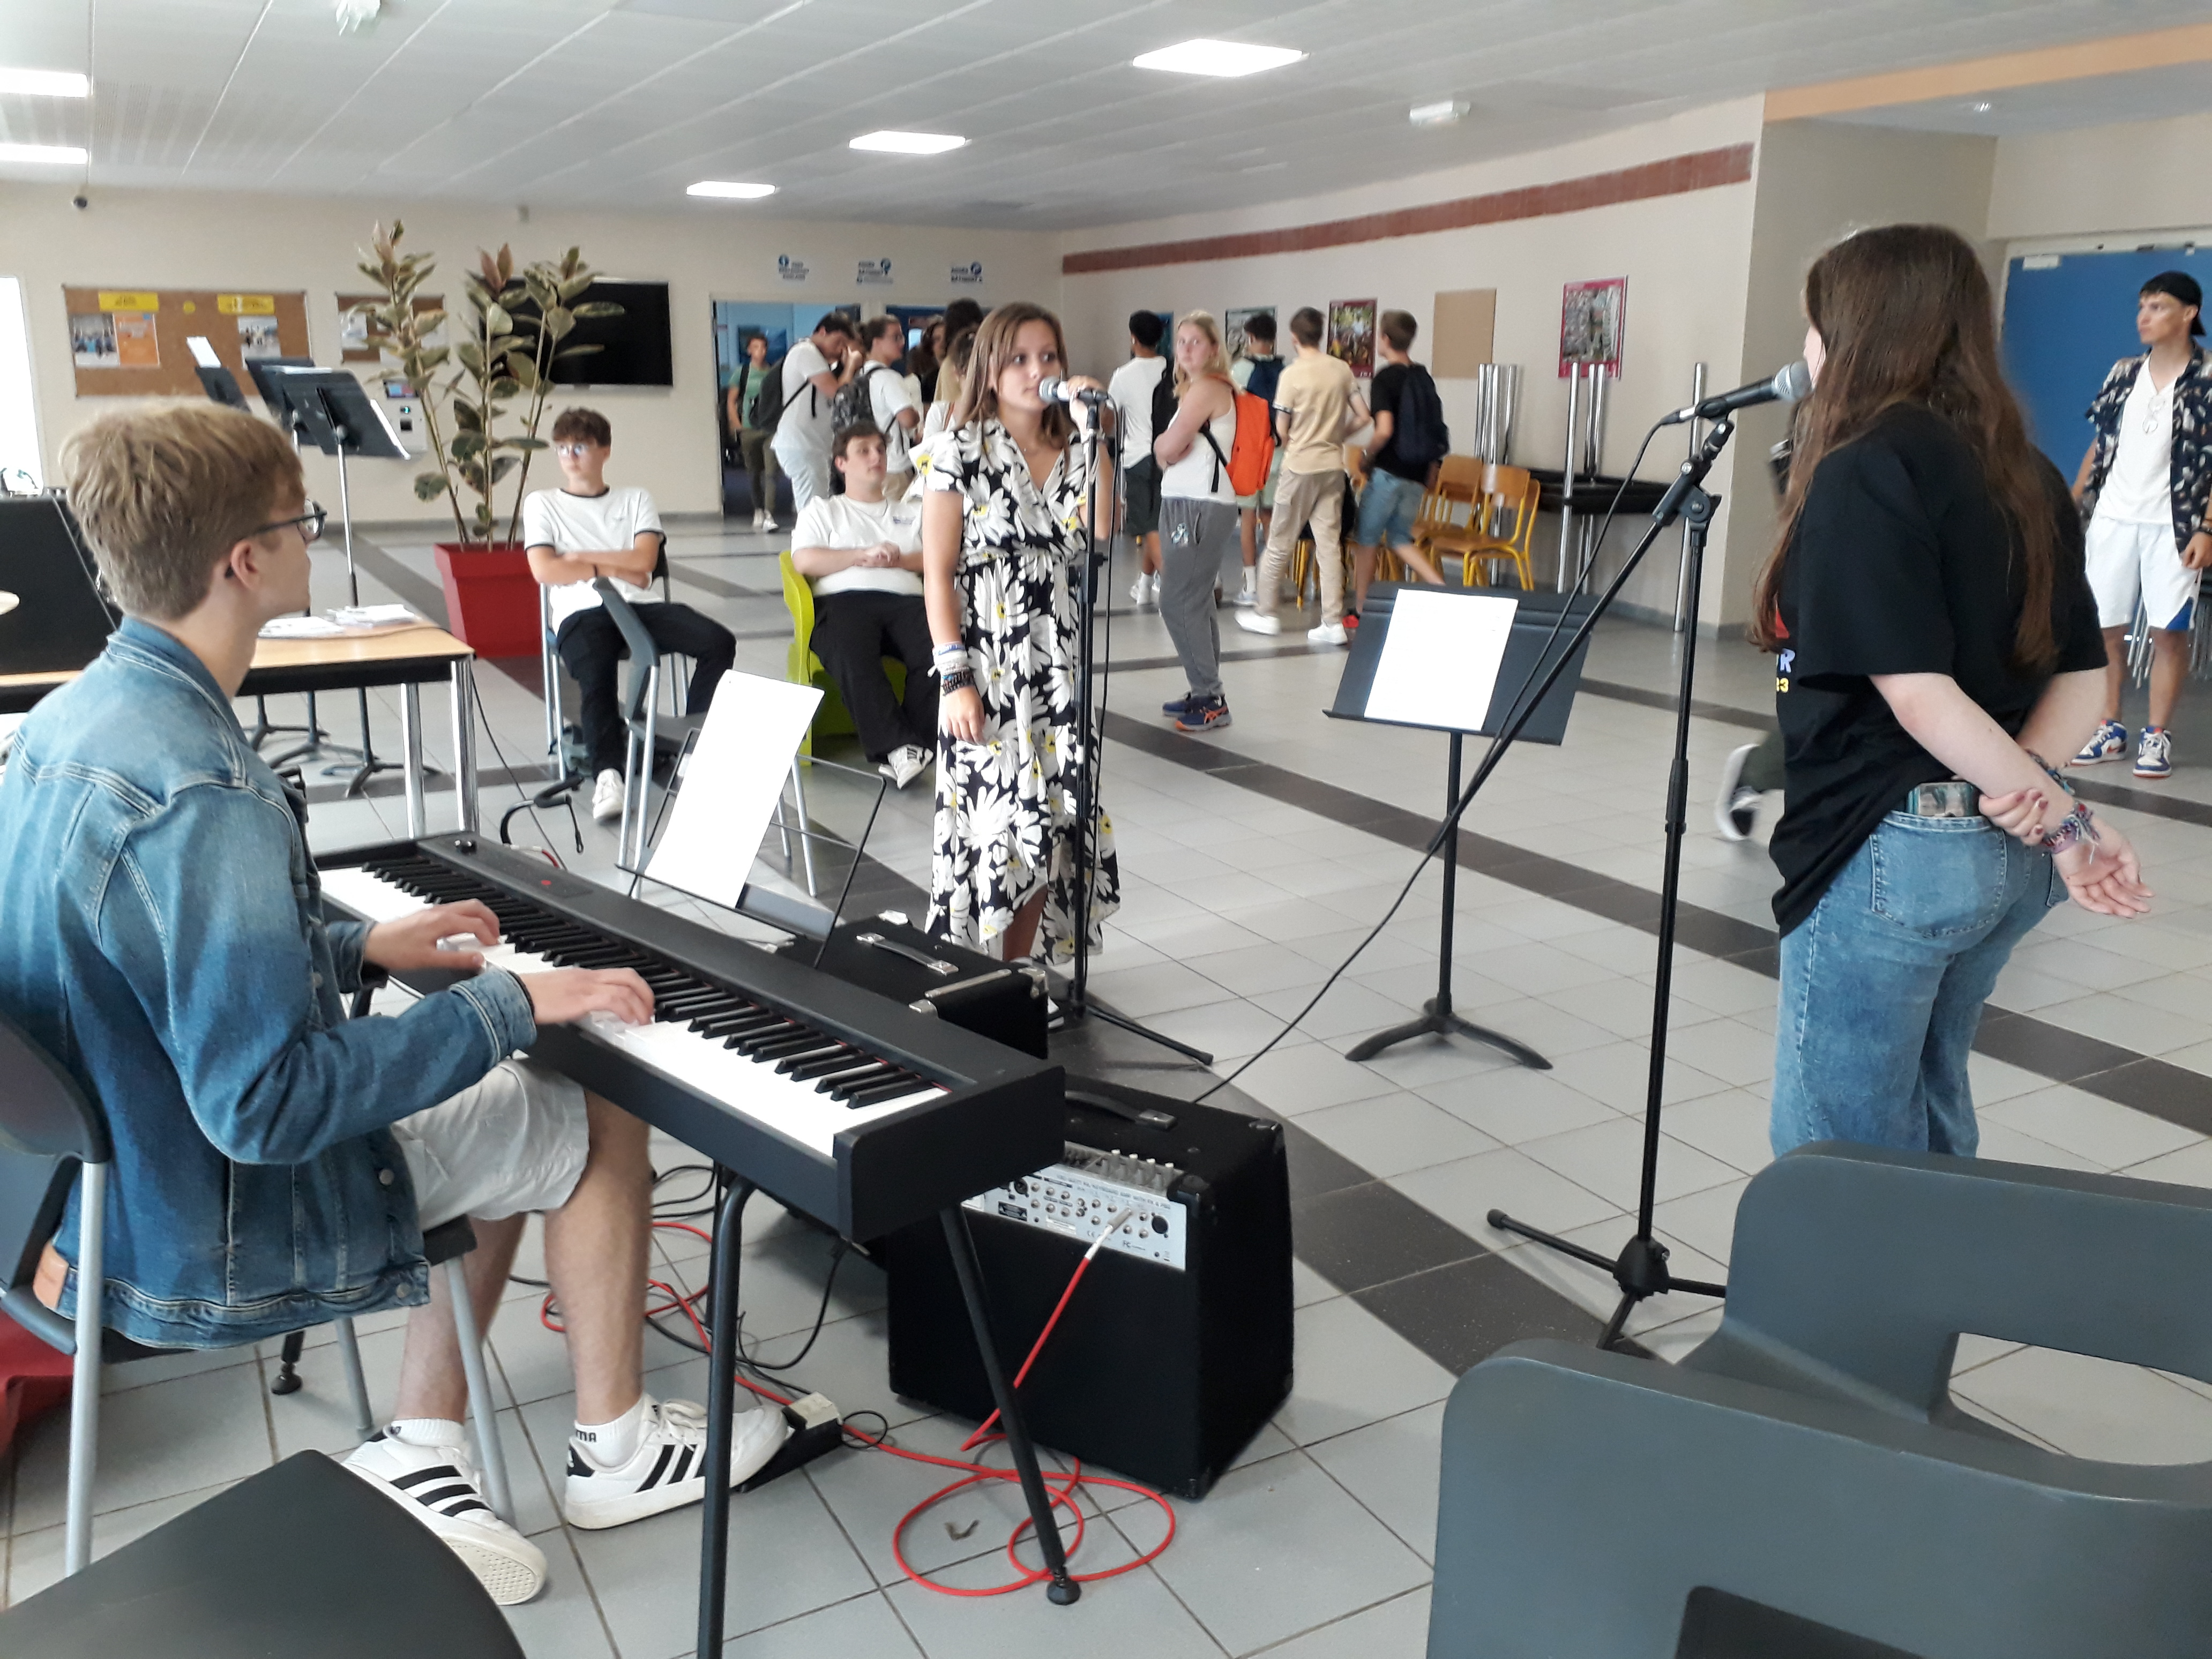 3 élèves de la section musique du lycée Robespierre à Arras se produisent au piano et au chant devant un public composé des anciens et nouveaux élèves de l'établissement